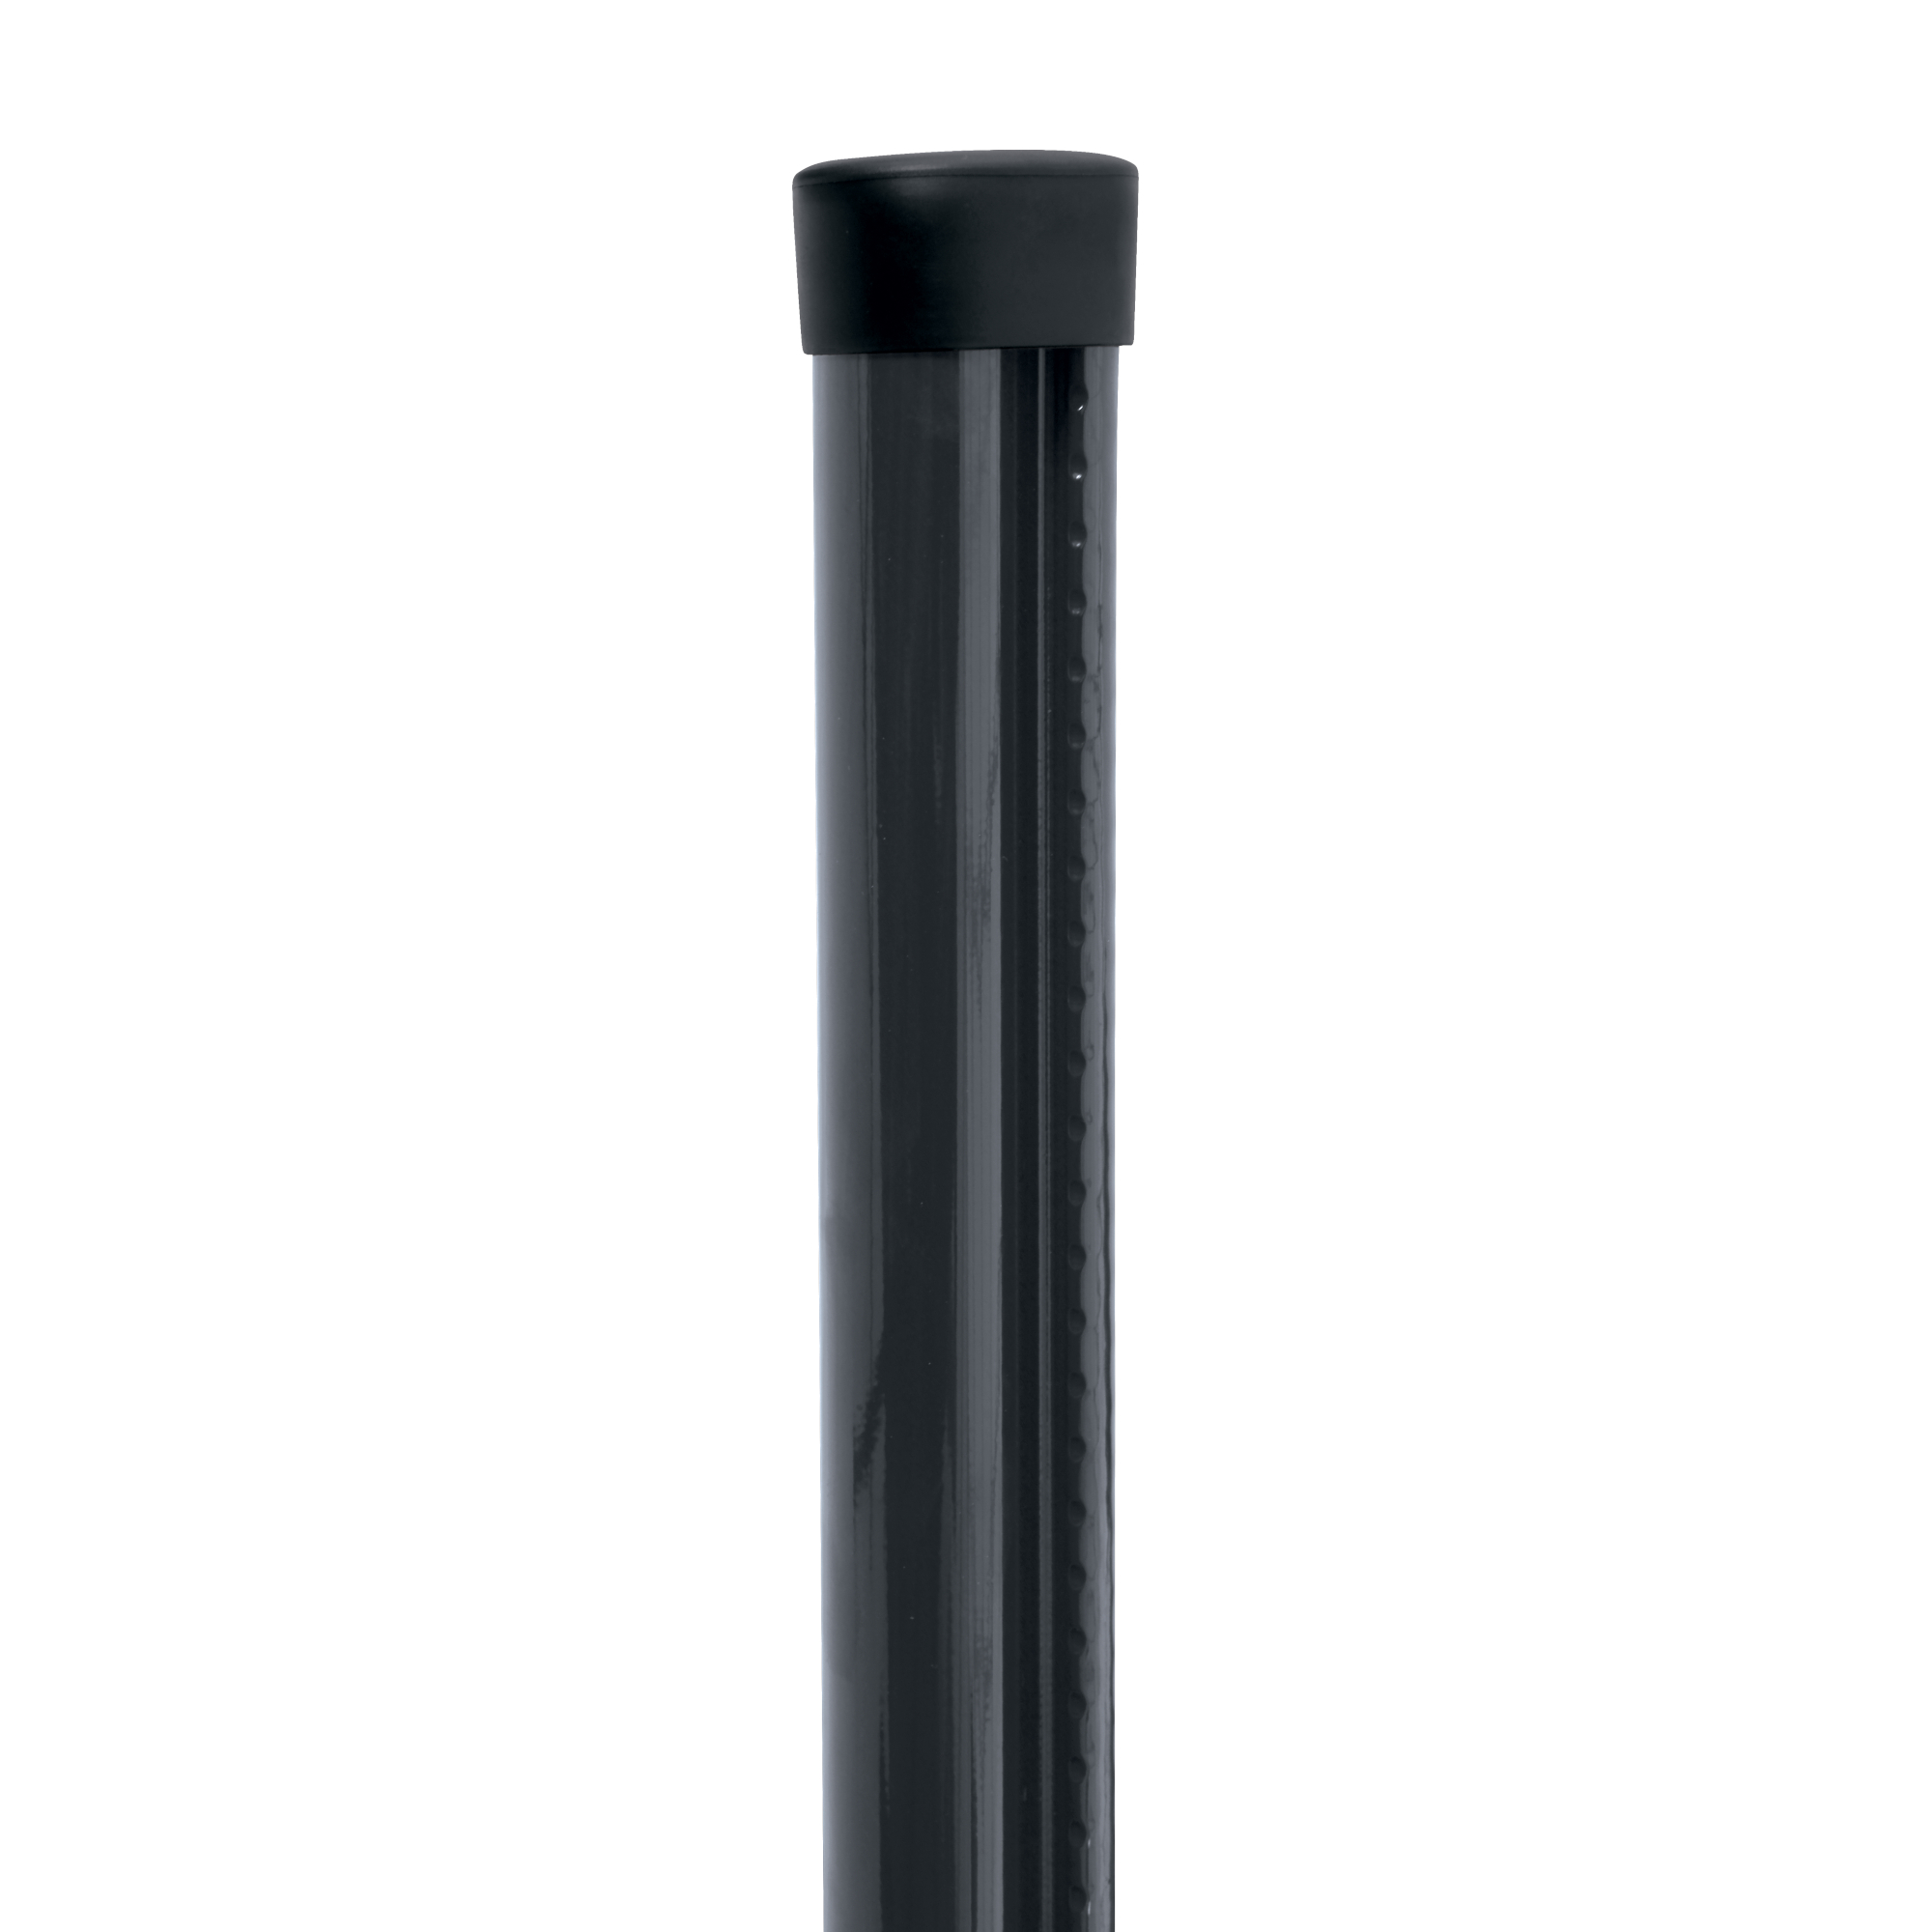 Sloupek kulatý s montážní lištou Pilclip Zn + PVC antracit průměr 48 mm výška 1